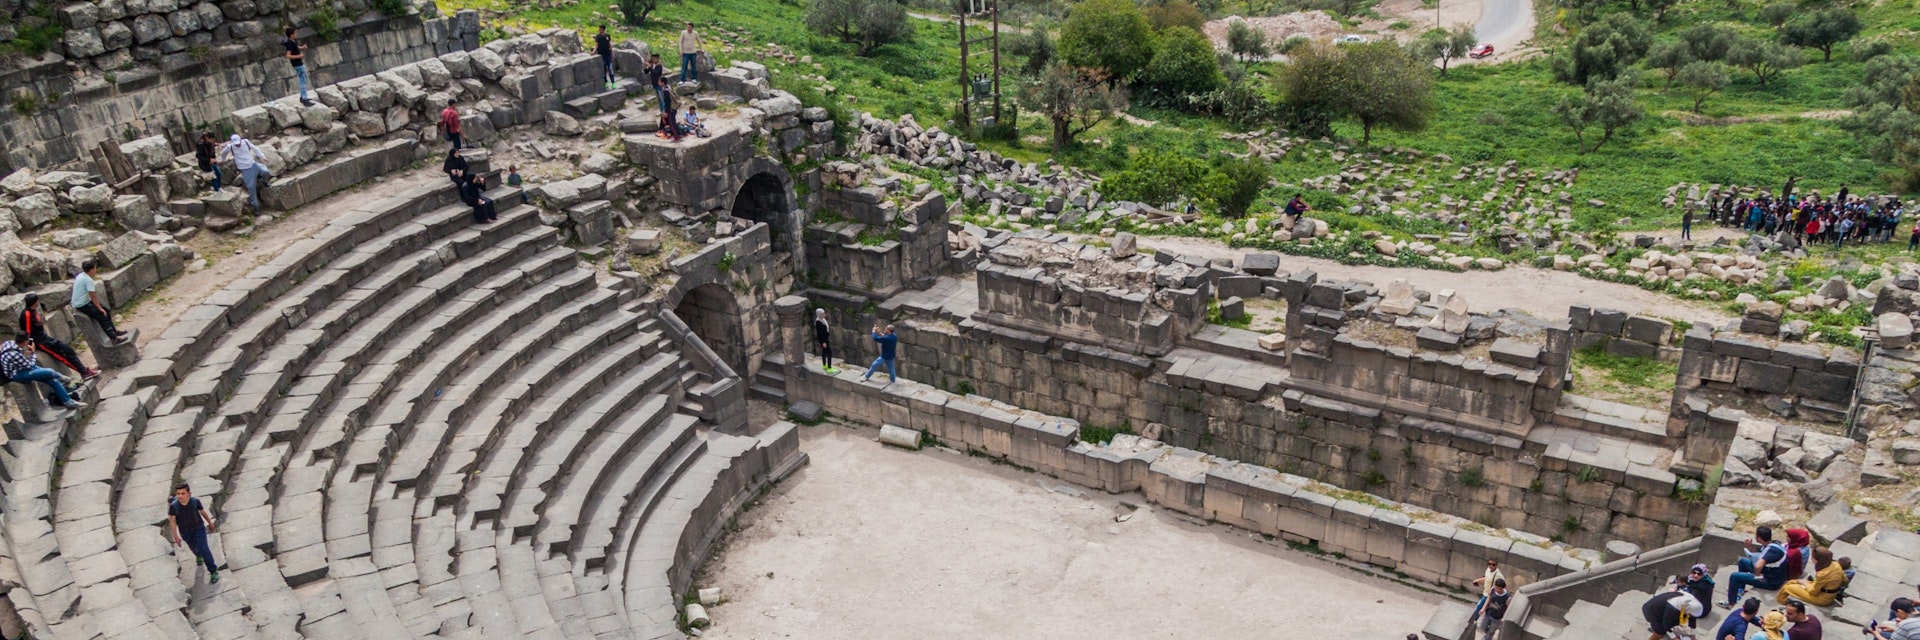 Tourists visit the West Theatre ruins in Umm Qais.